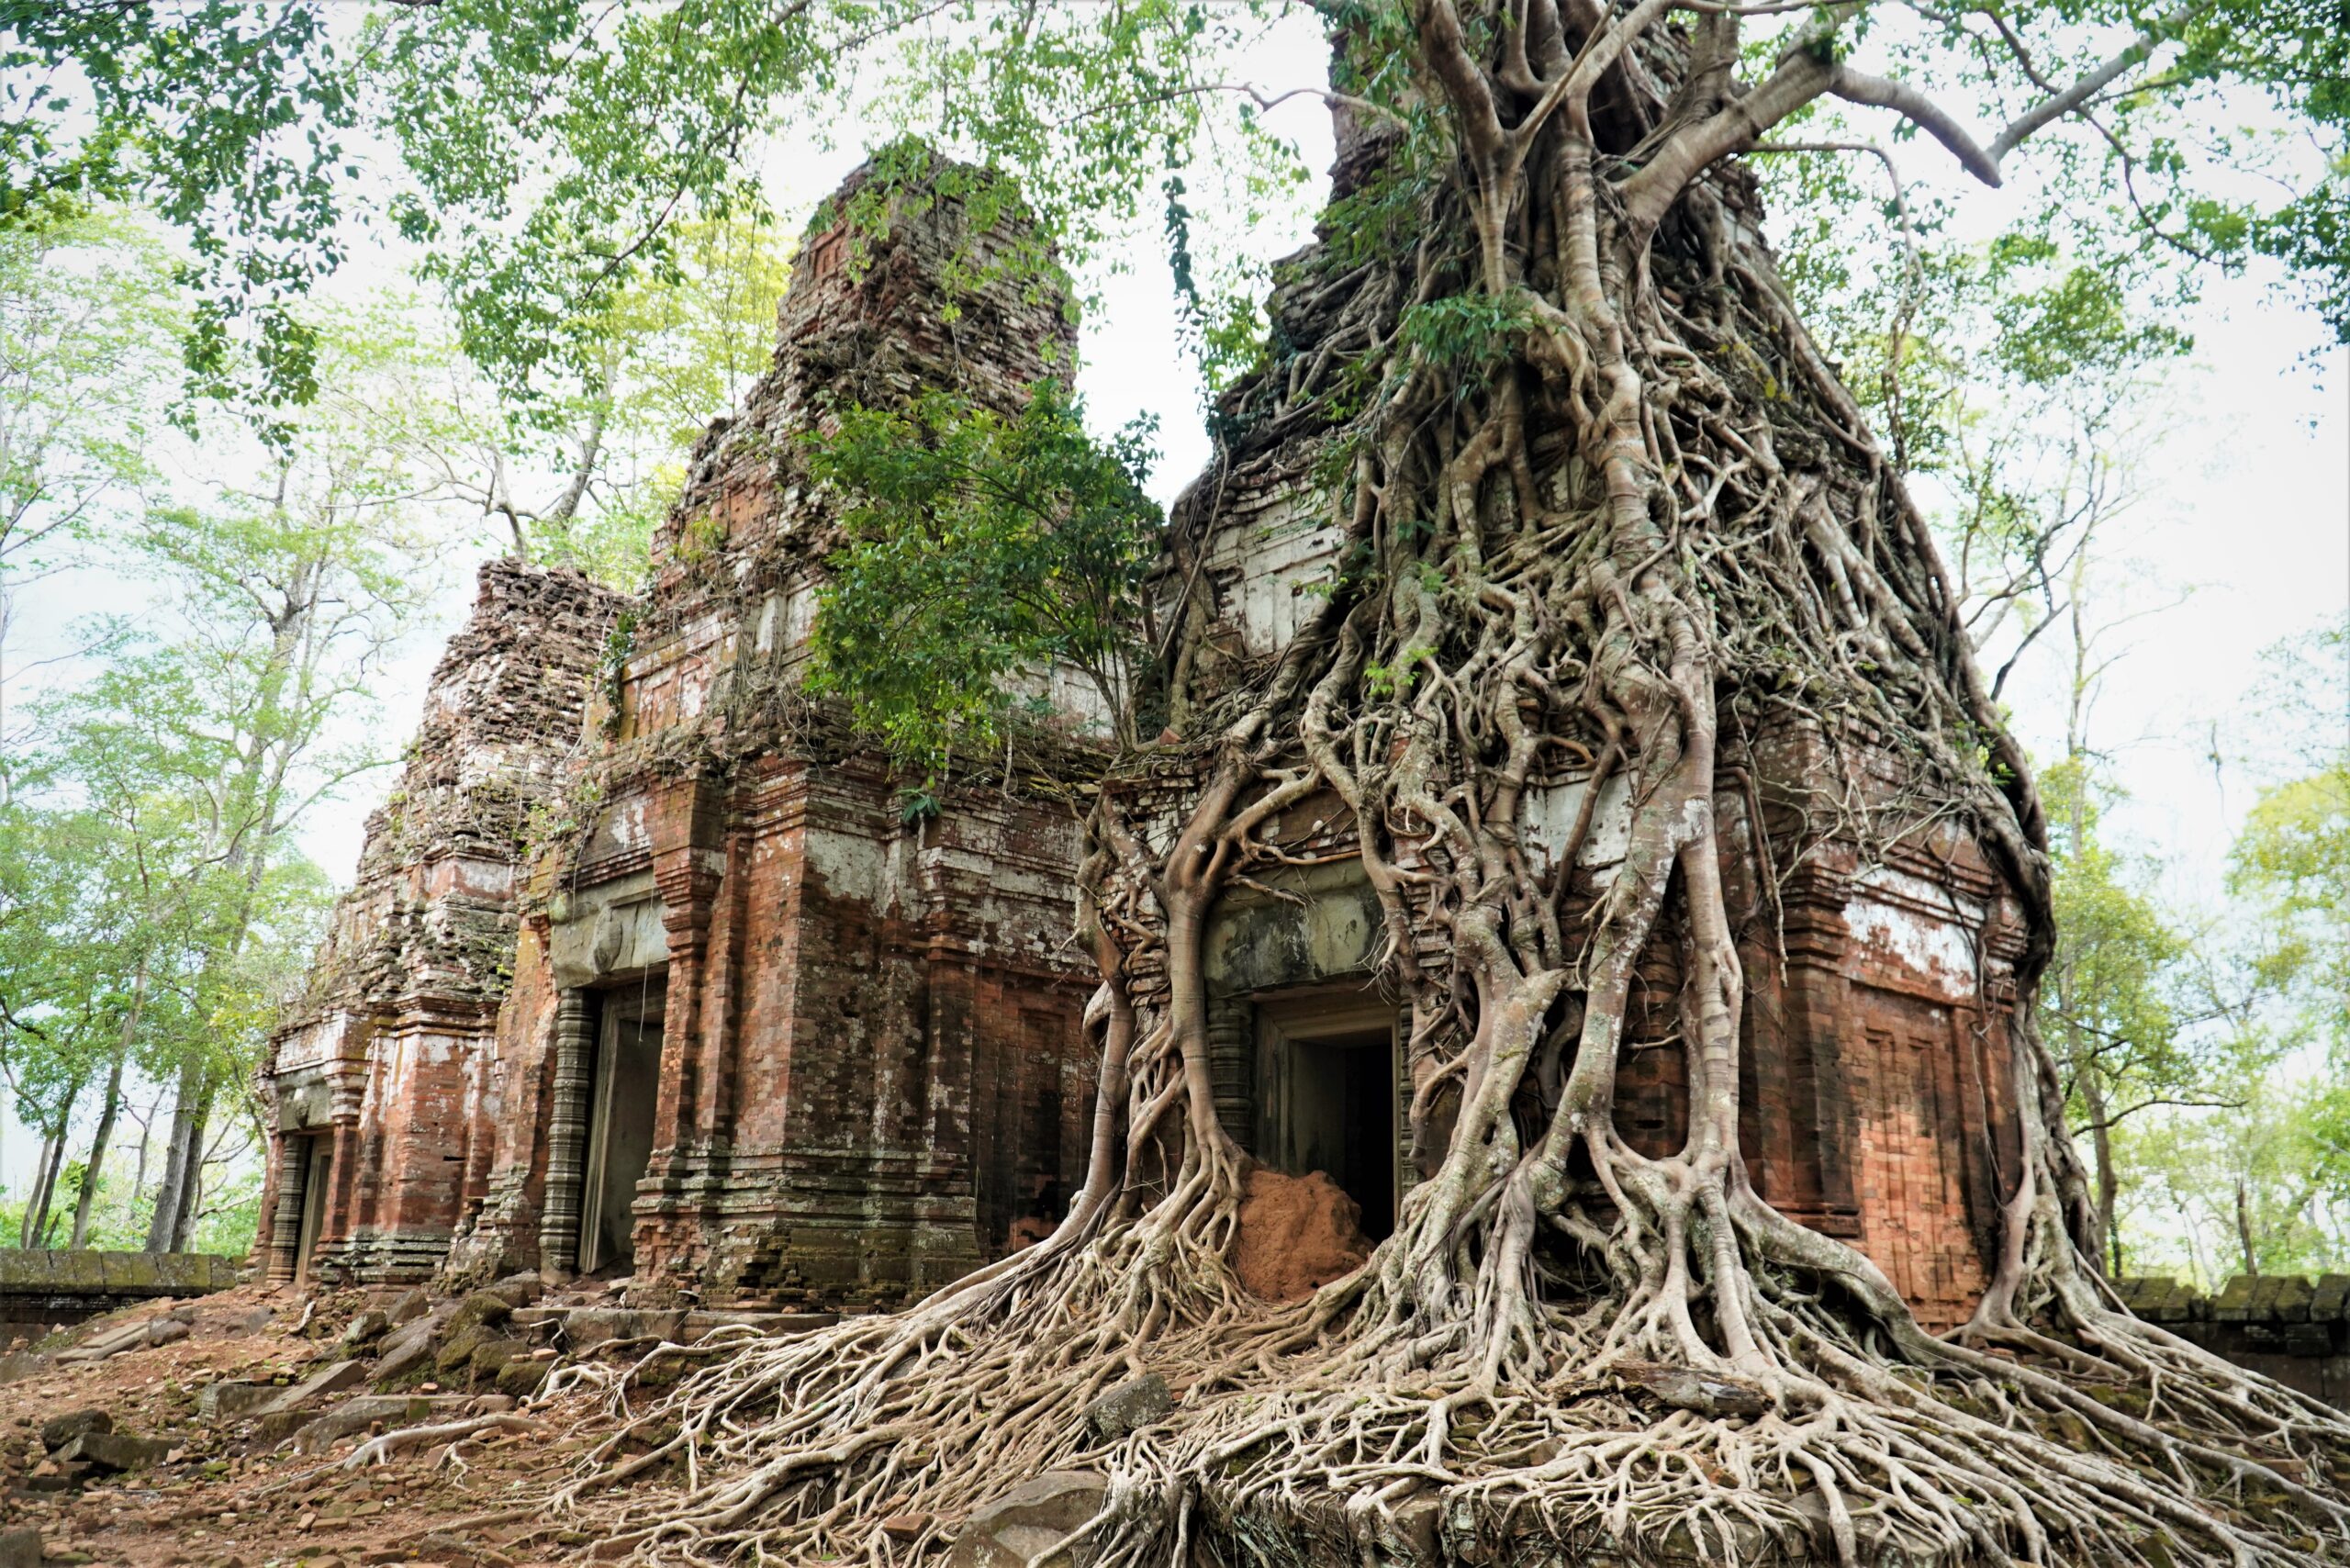 © National Authority for Preah Vihear (NAPV) via UNESCO